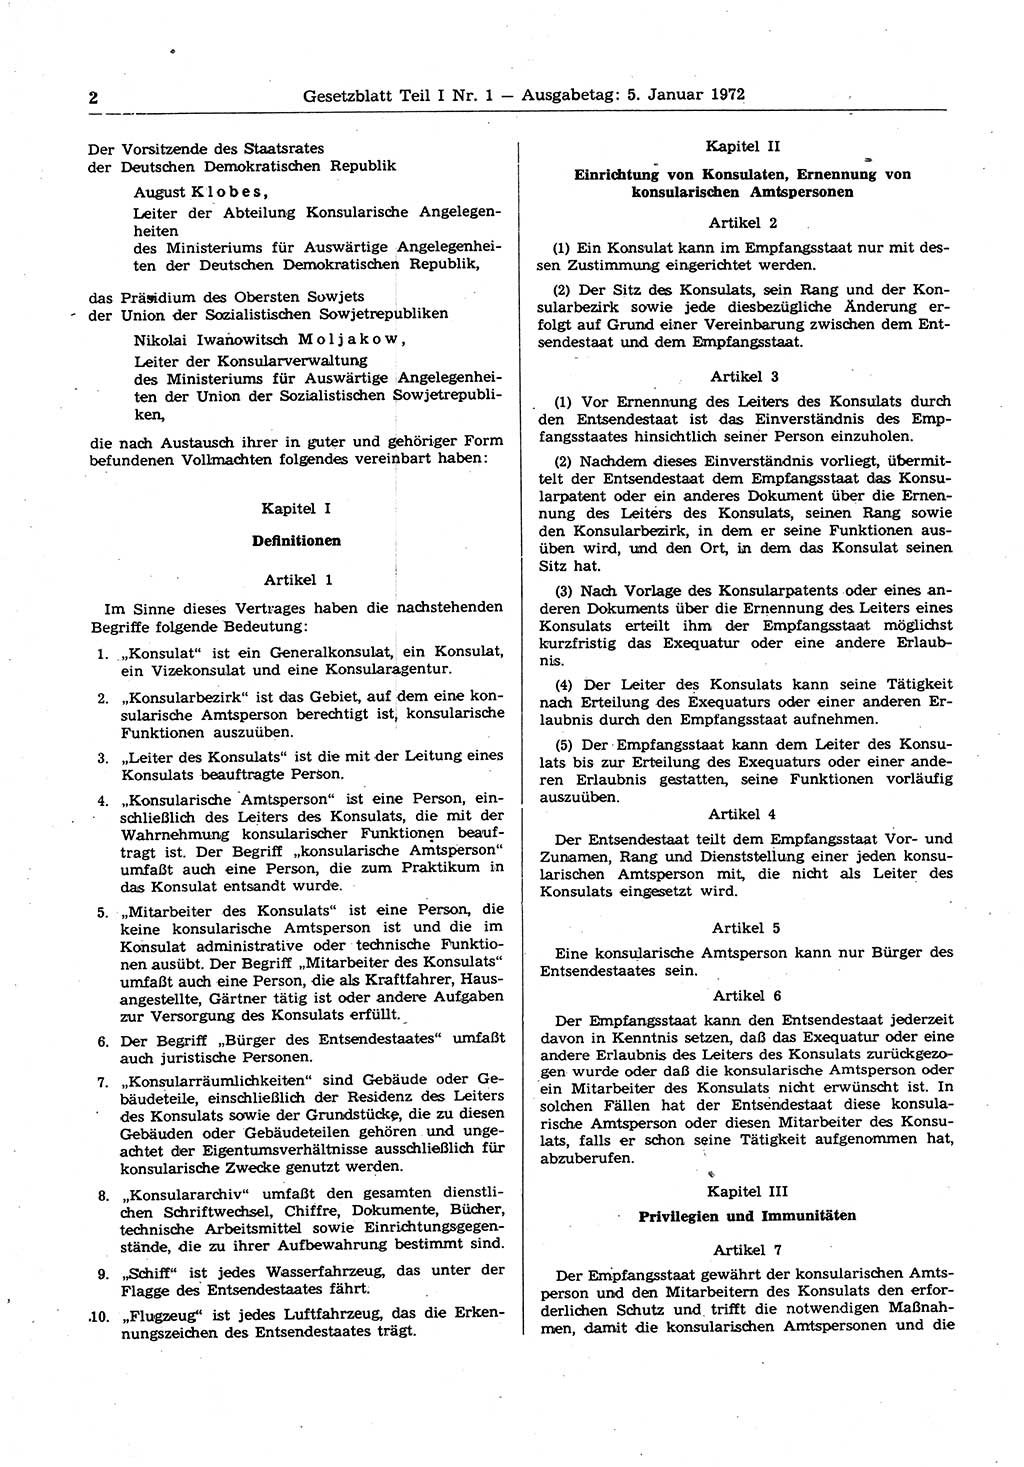 Gesetzblatt (GBl.) der Deutschen Demokratischen Republik (DDR) Teil Ⅰ 1972, Seite 2 (GBl. DDR Ⅰ 1972, S. 2)